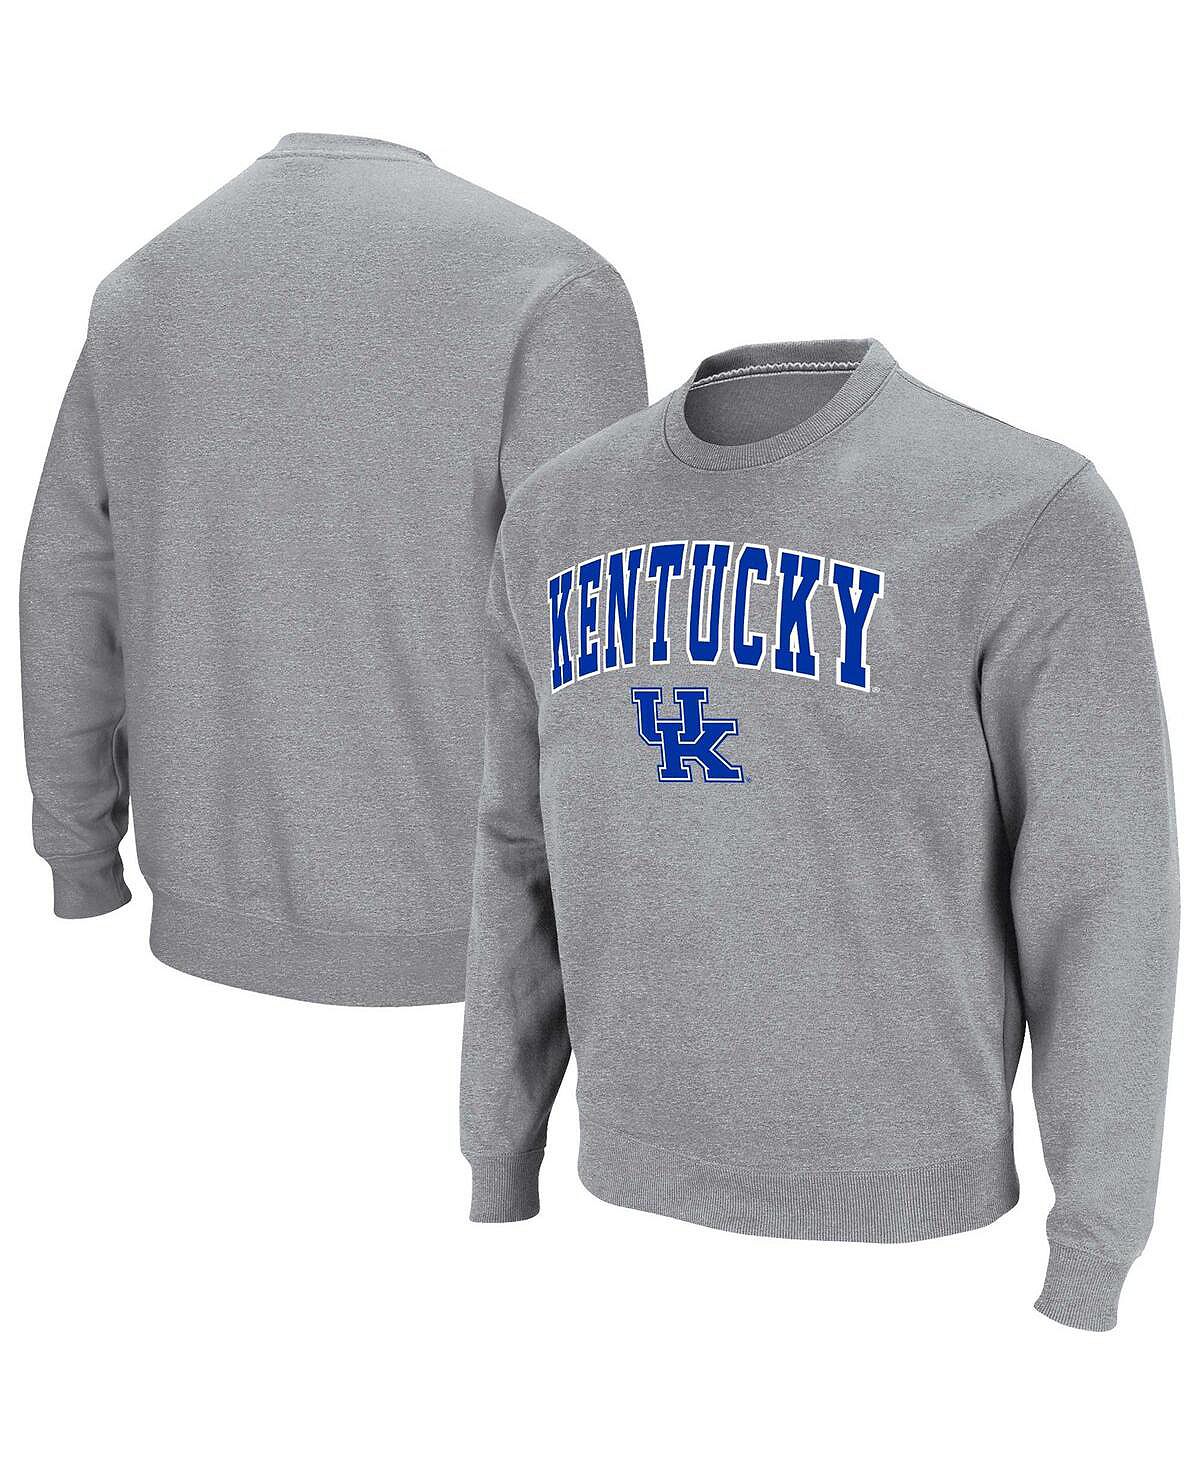 Мужской серый пуловер с логотипом и аркой Kentucky Wildcats Colosseum kentucky gentleman